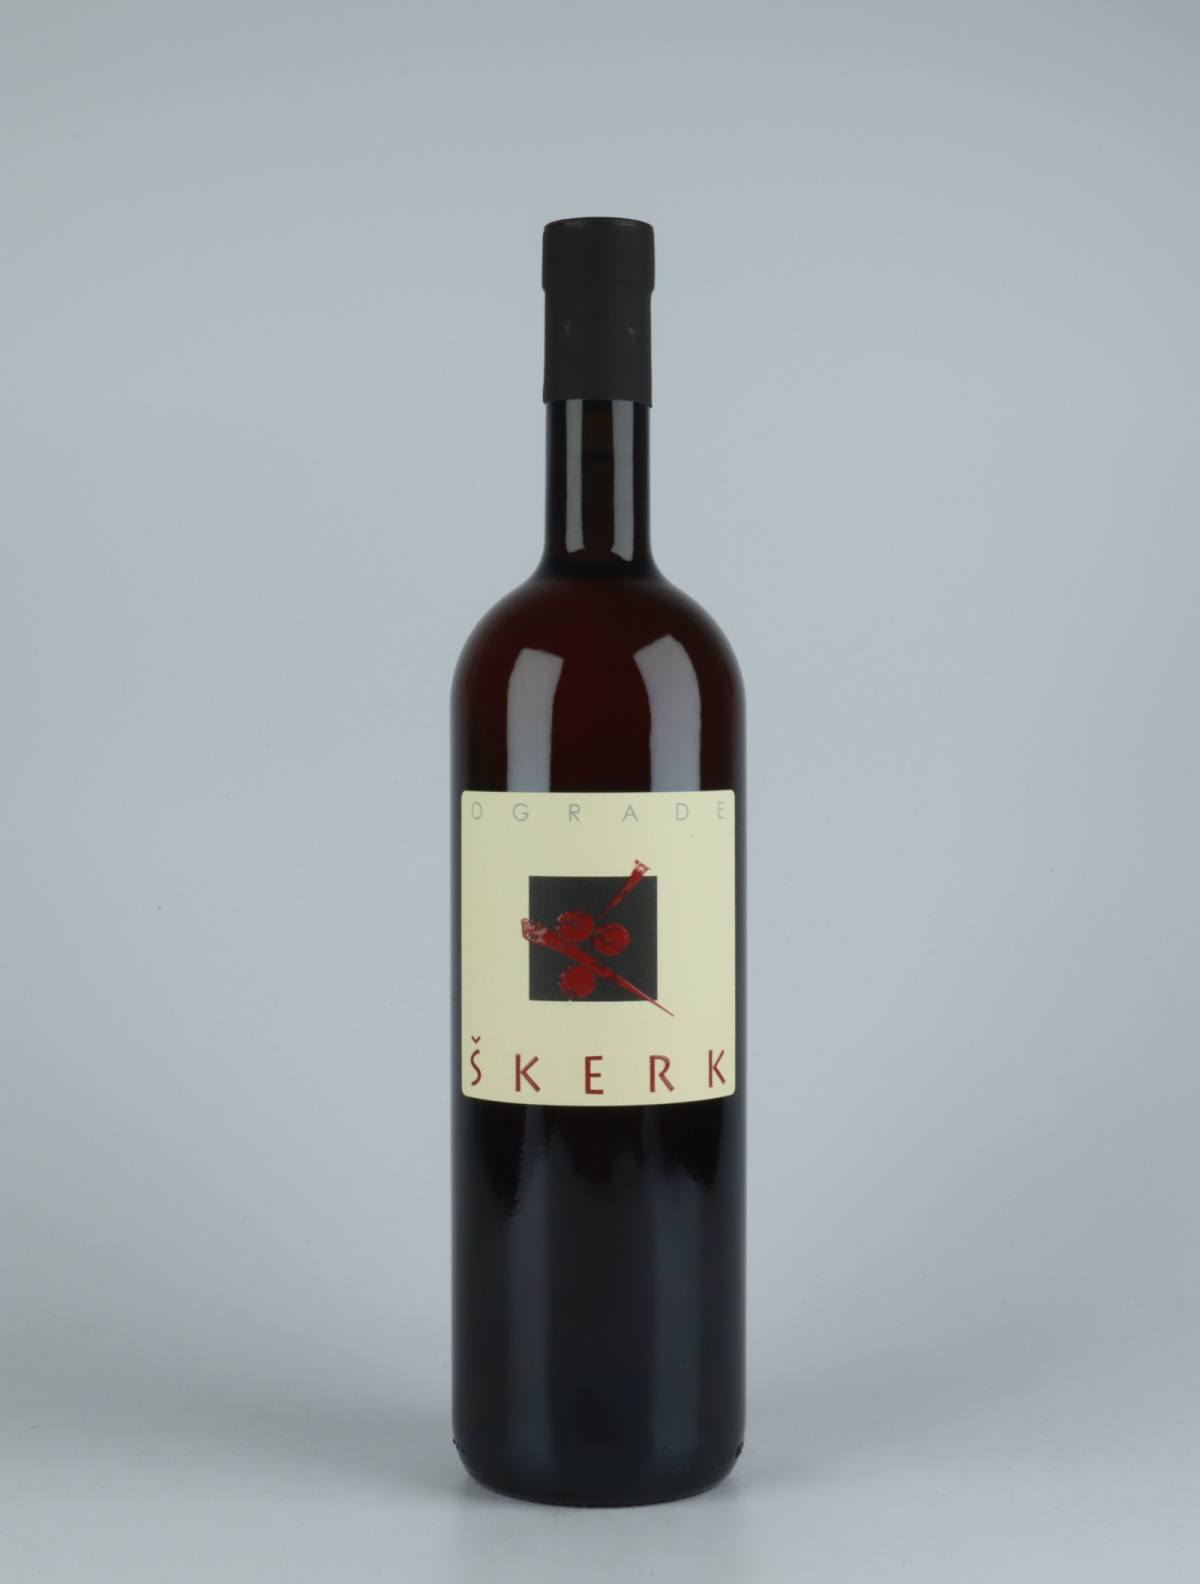 En flaske 2019 Ograde Orange vin fra Skerk, Friuli i Italien